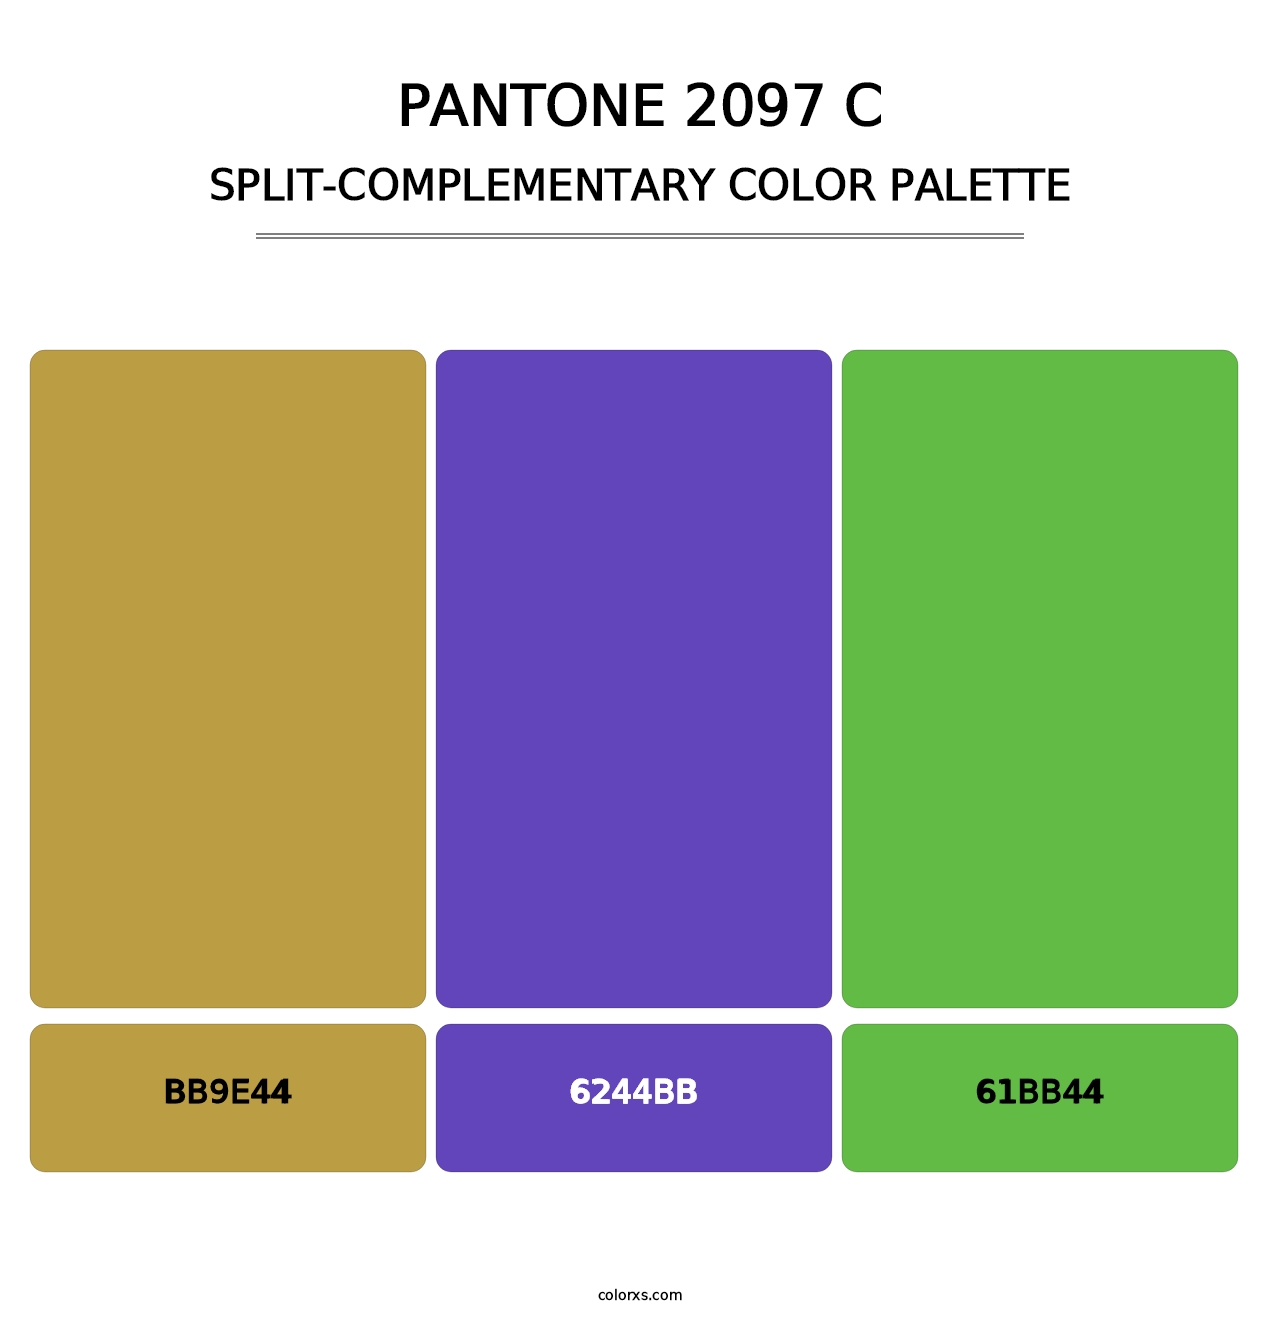 PANTONE 2097 C - Split-Complementary Color Palette